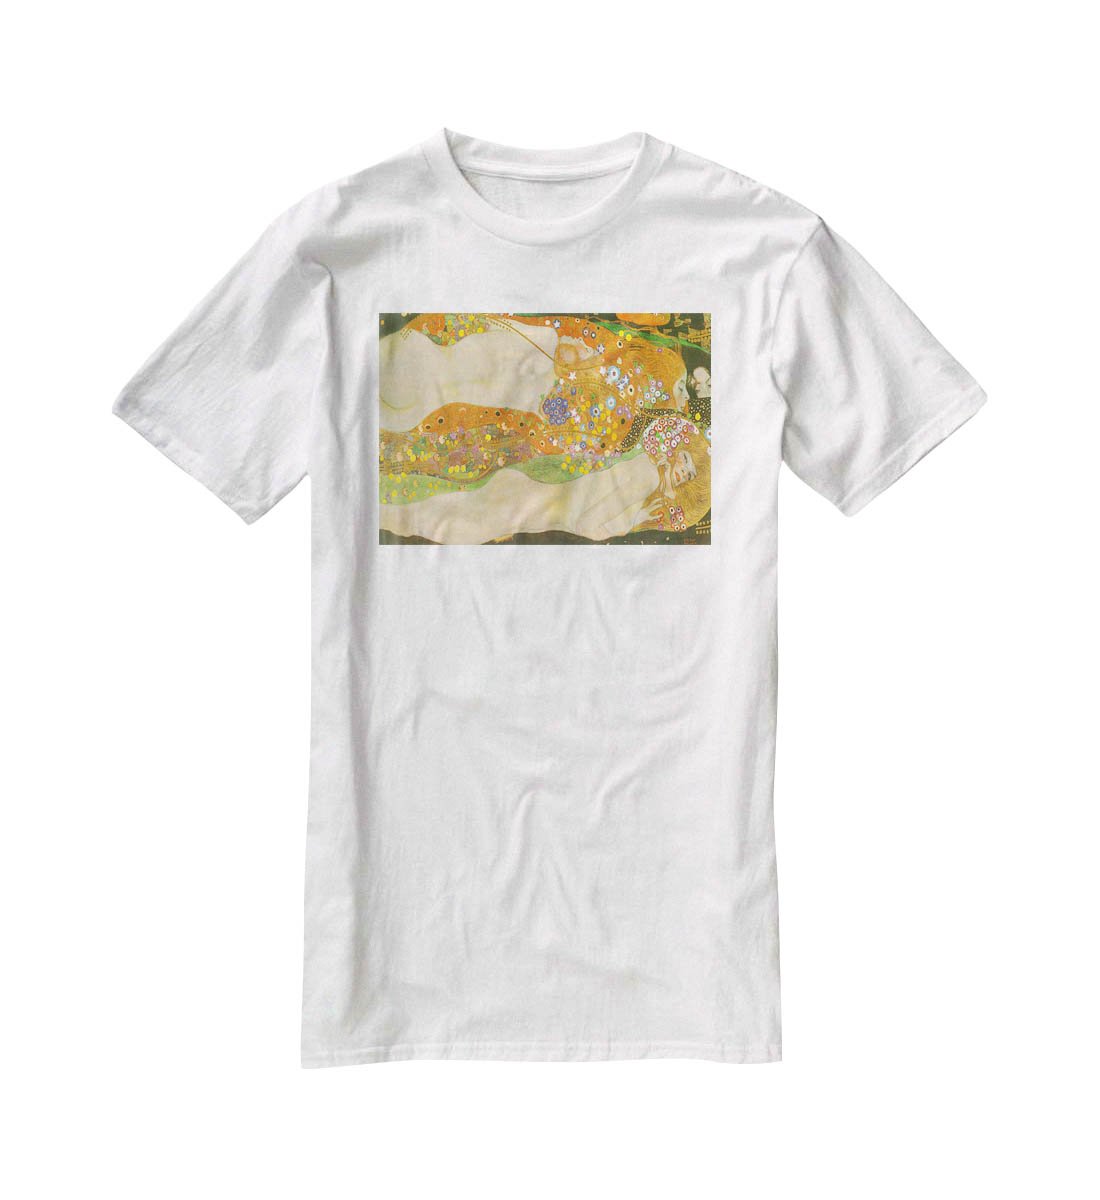 Water snakes friends II by Klimt T-Shirt - Canvas Art Rocks - 5